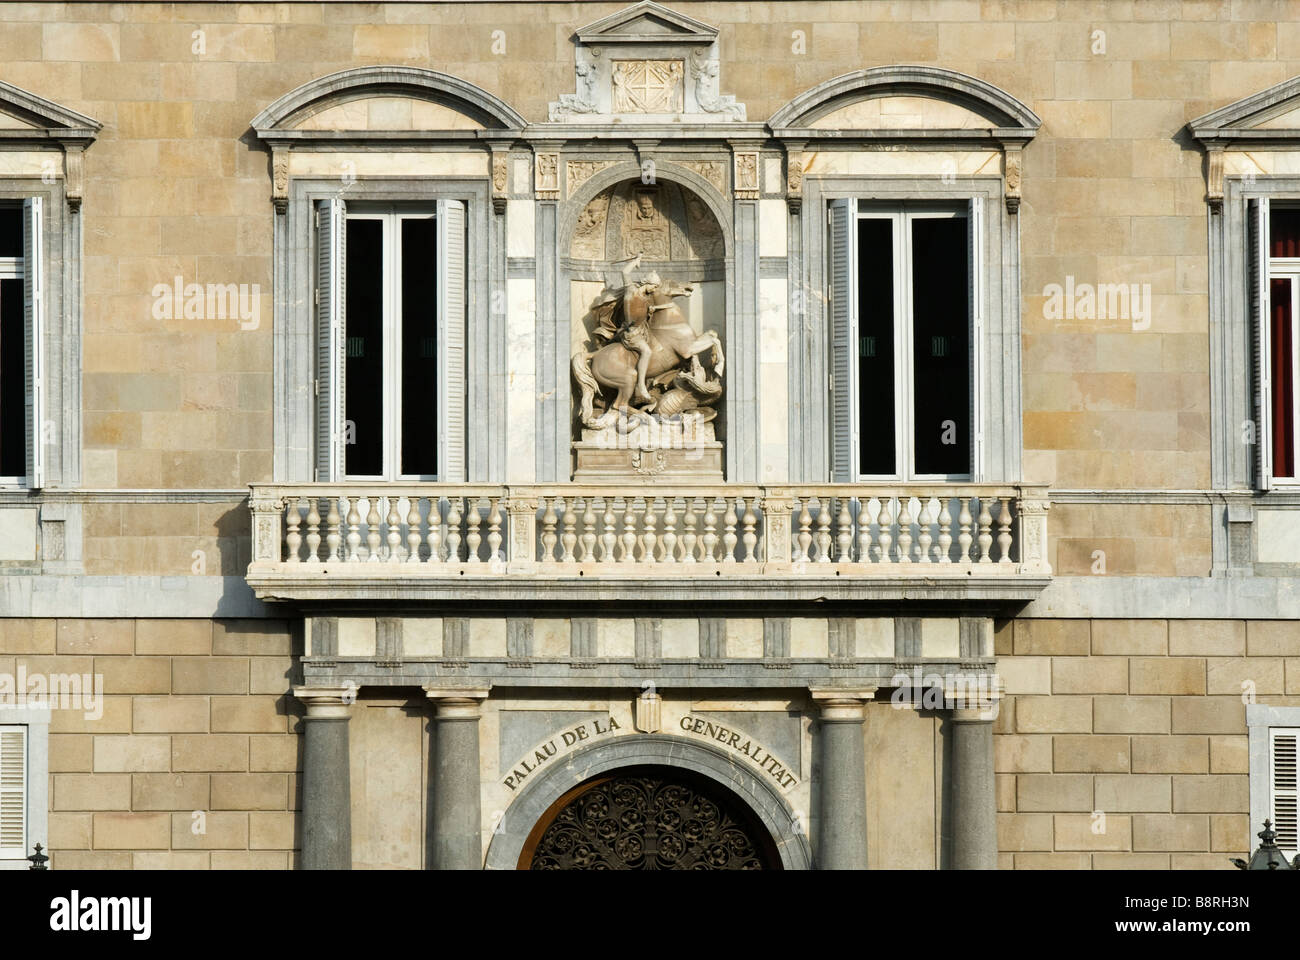 Main Balcony of the Catalonias goverment palace in Barcelona Stock Photo